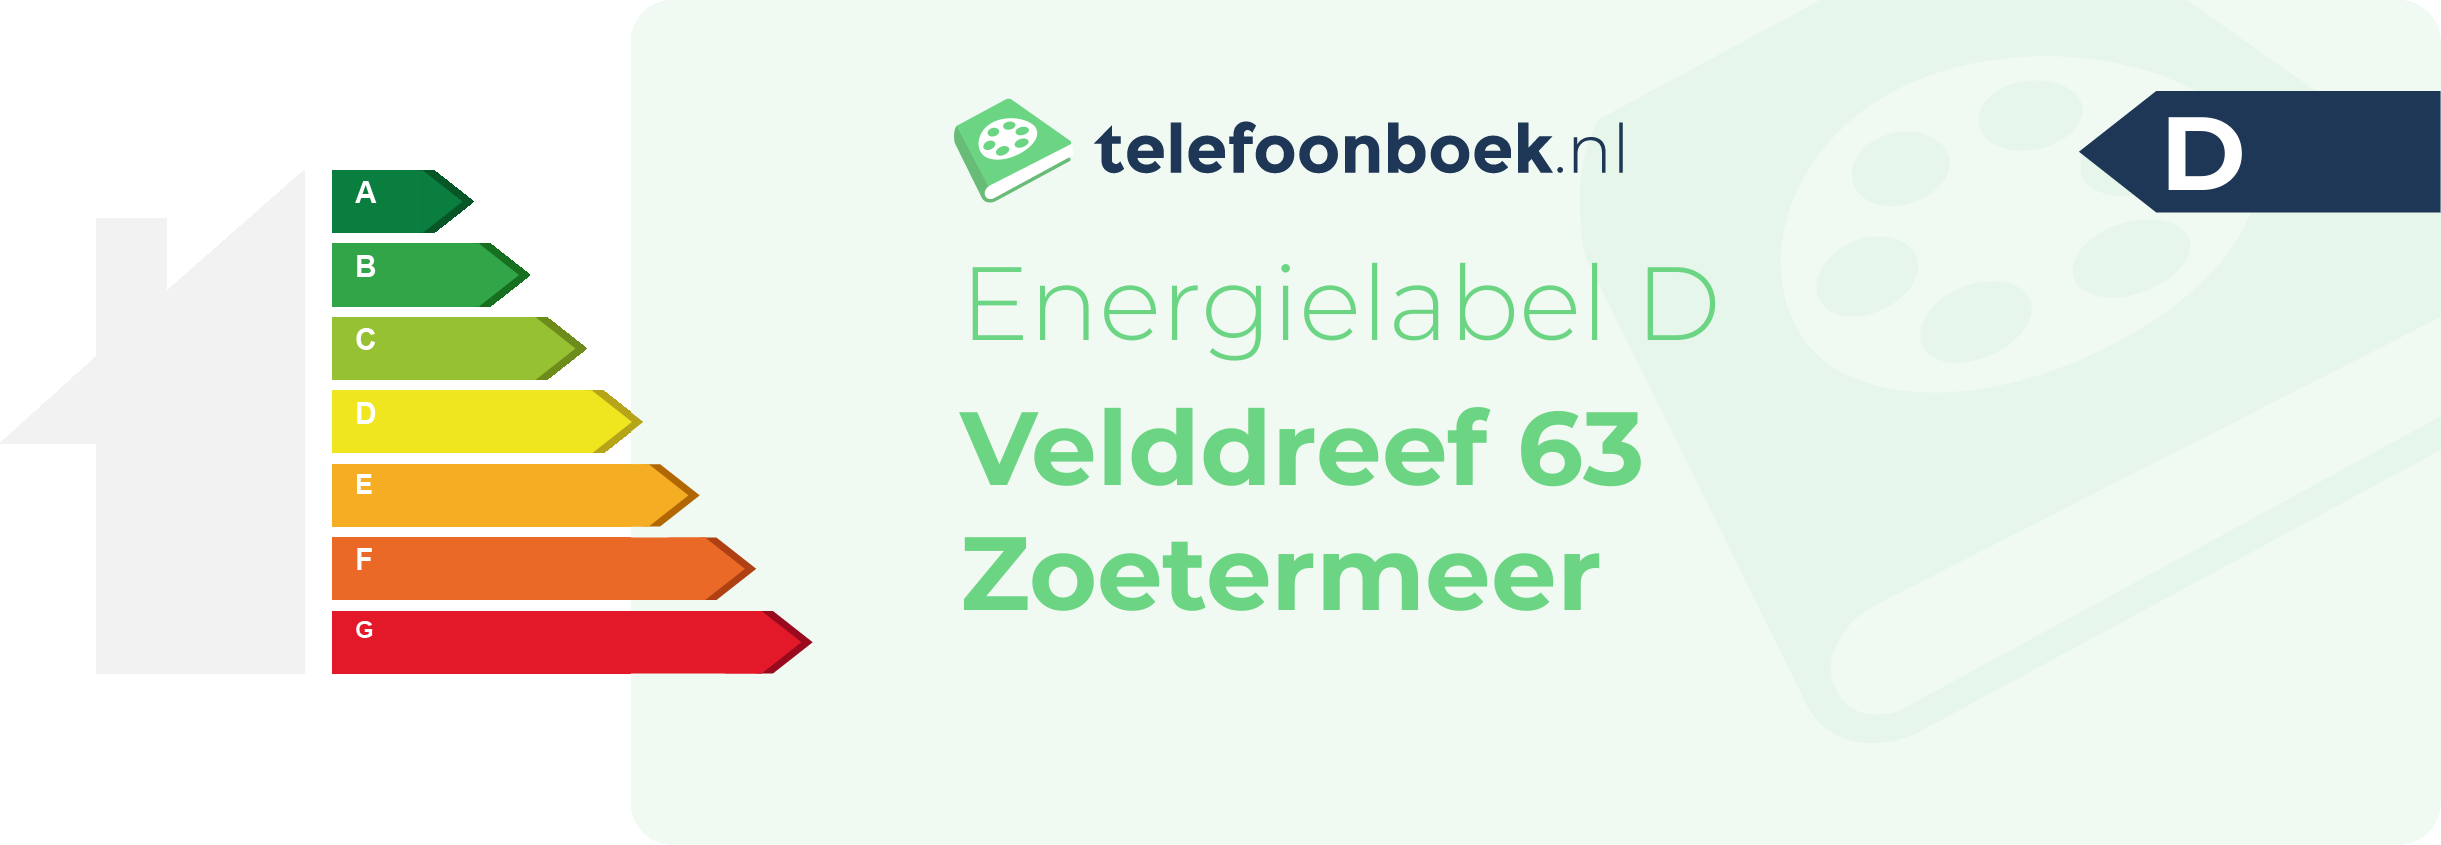 Energielabel Velddreef 63 Zoetermeer